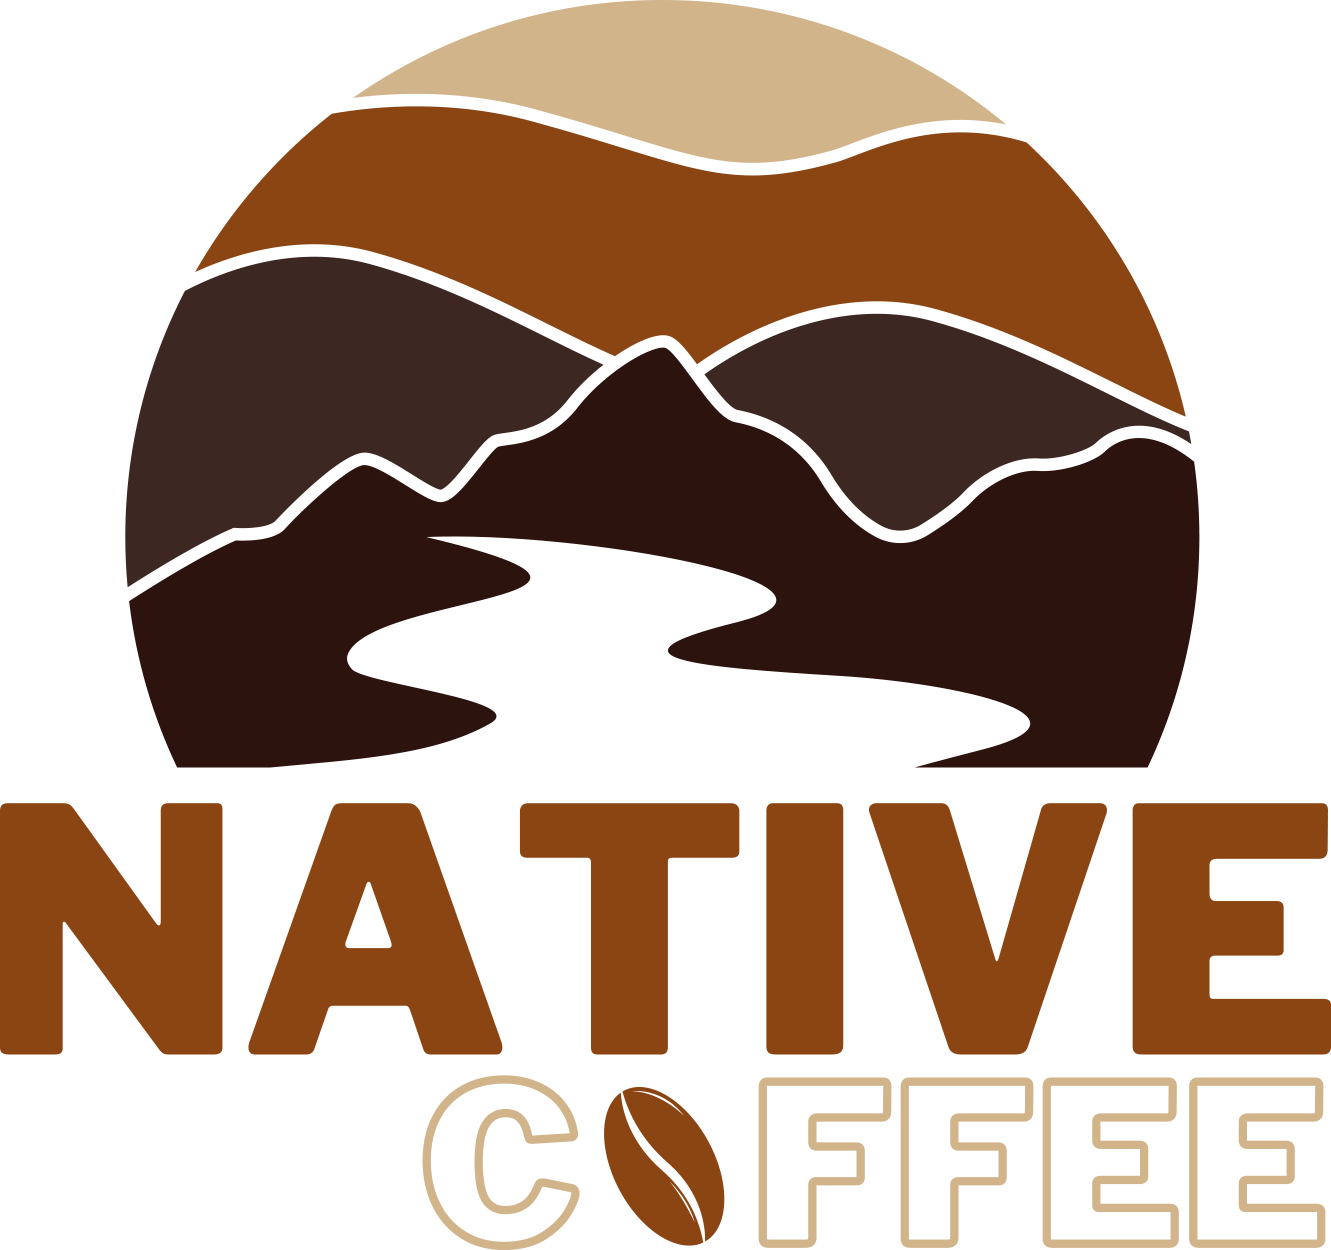 Native Coffee